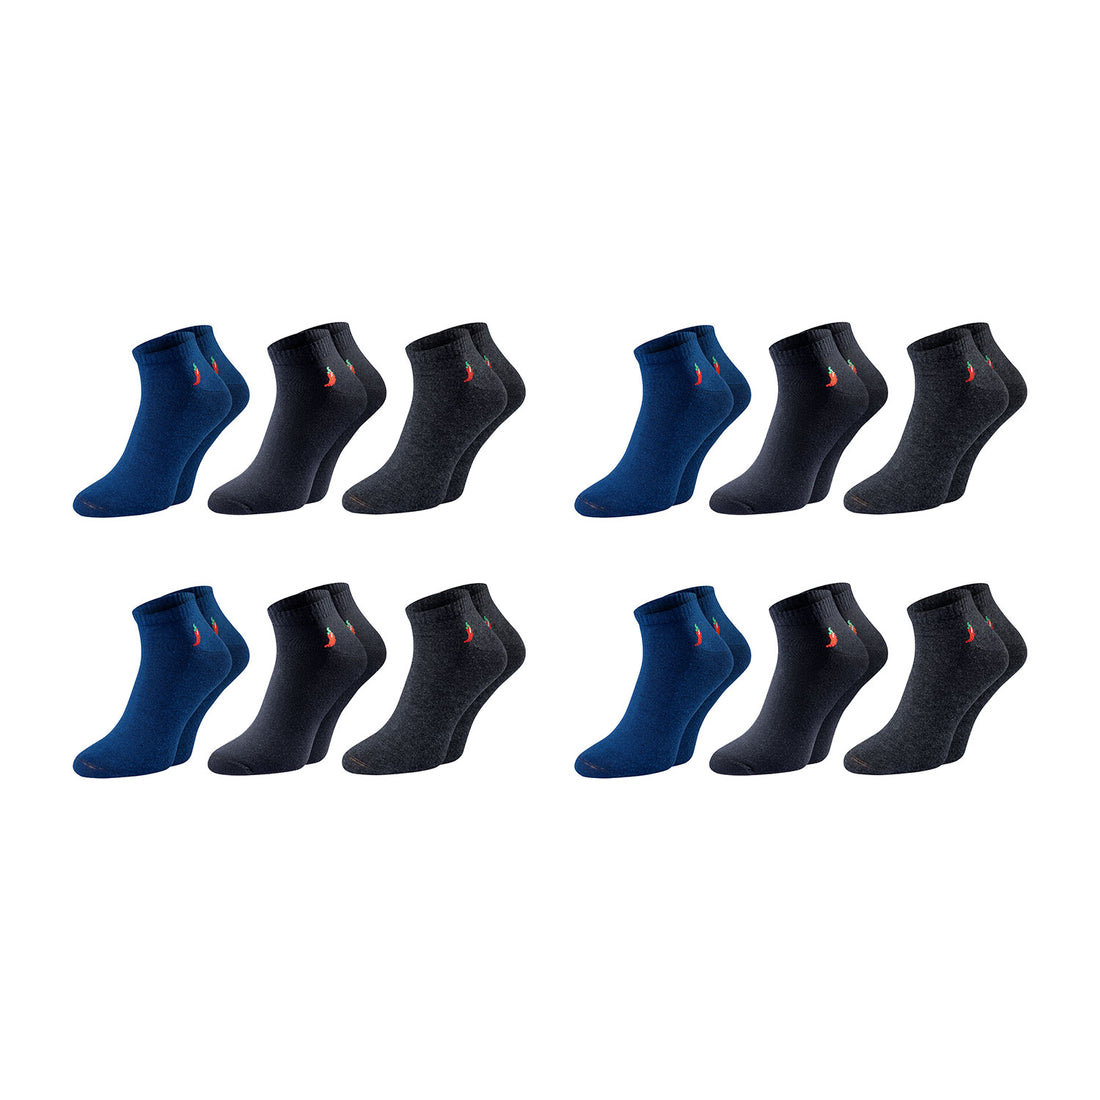 ChiliLifestyle Quarter Dark Socken, 12 Paar, für Damen und Herren